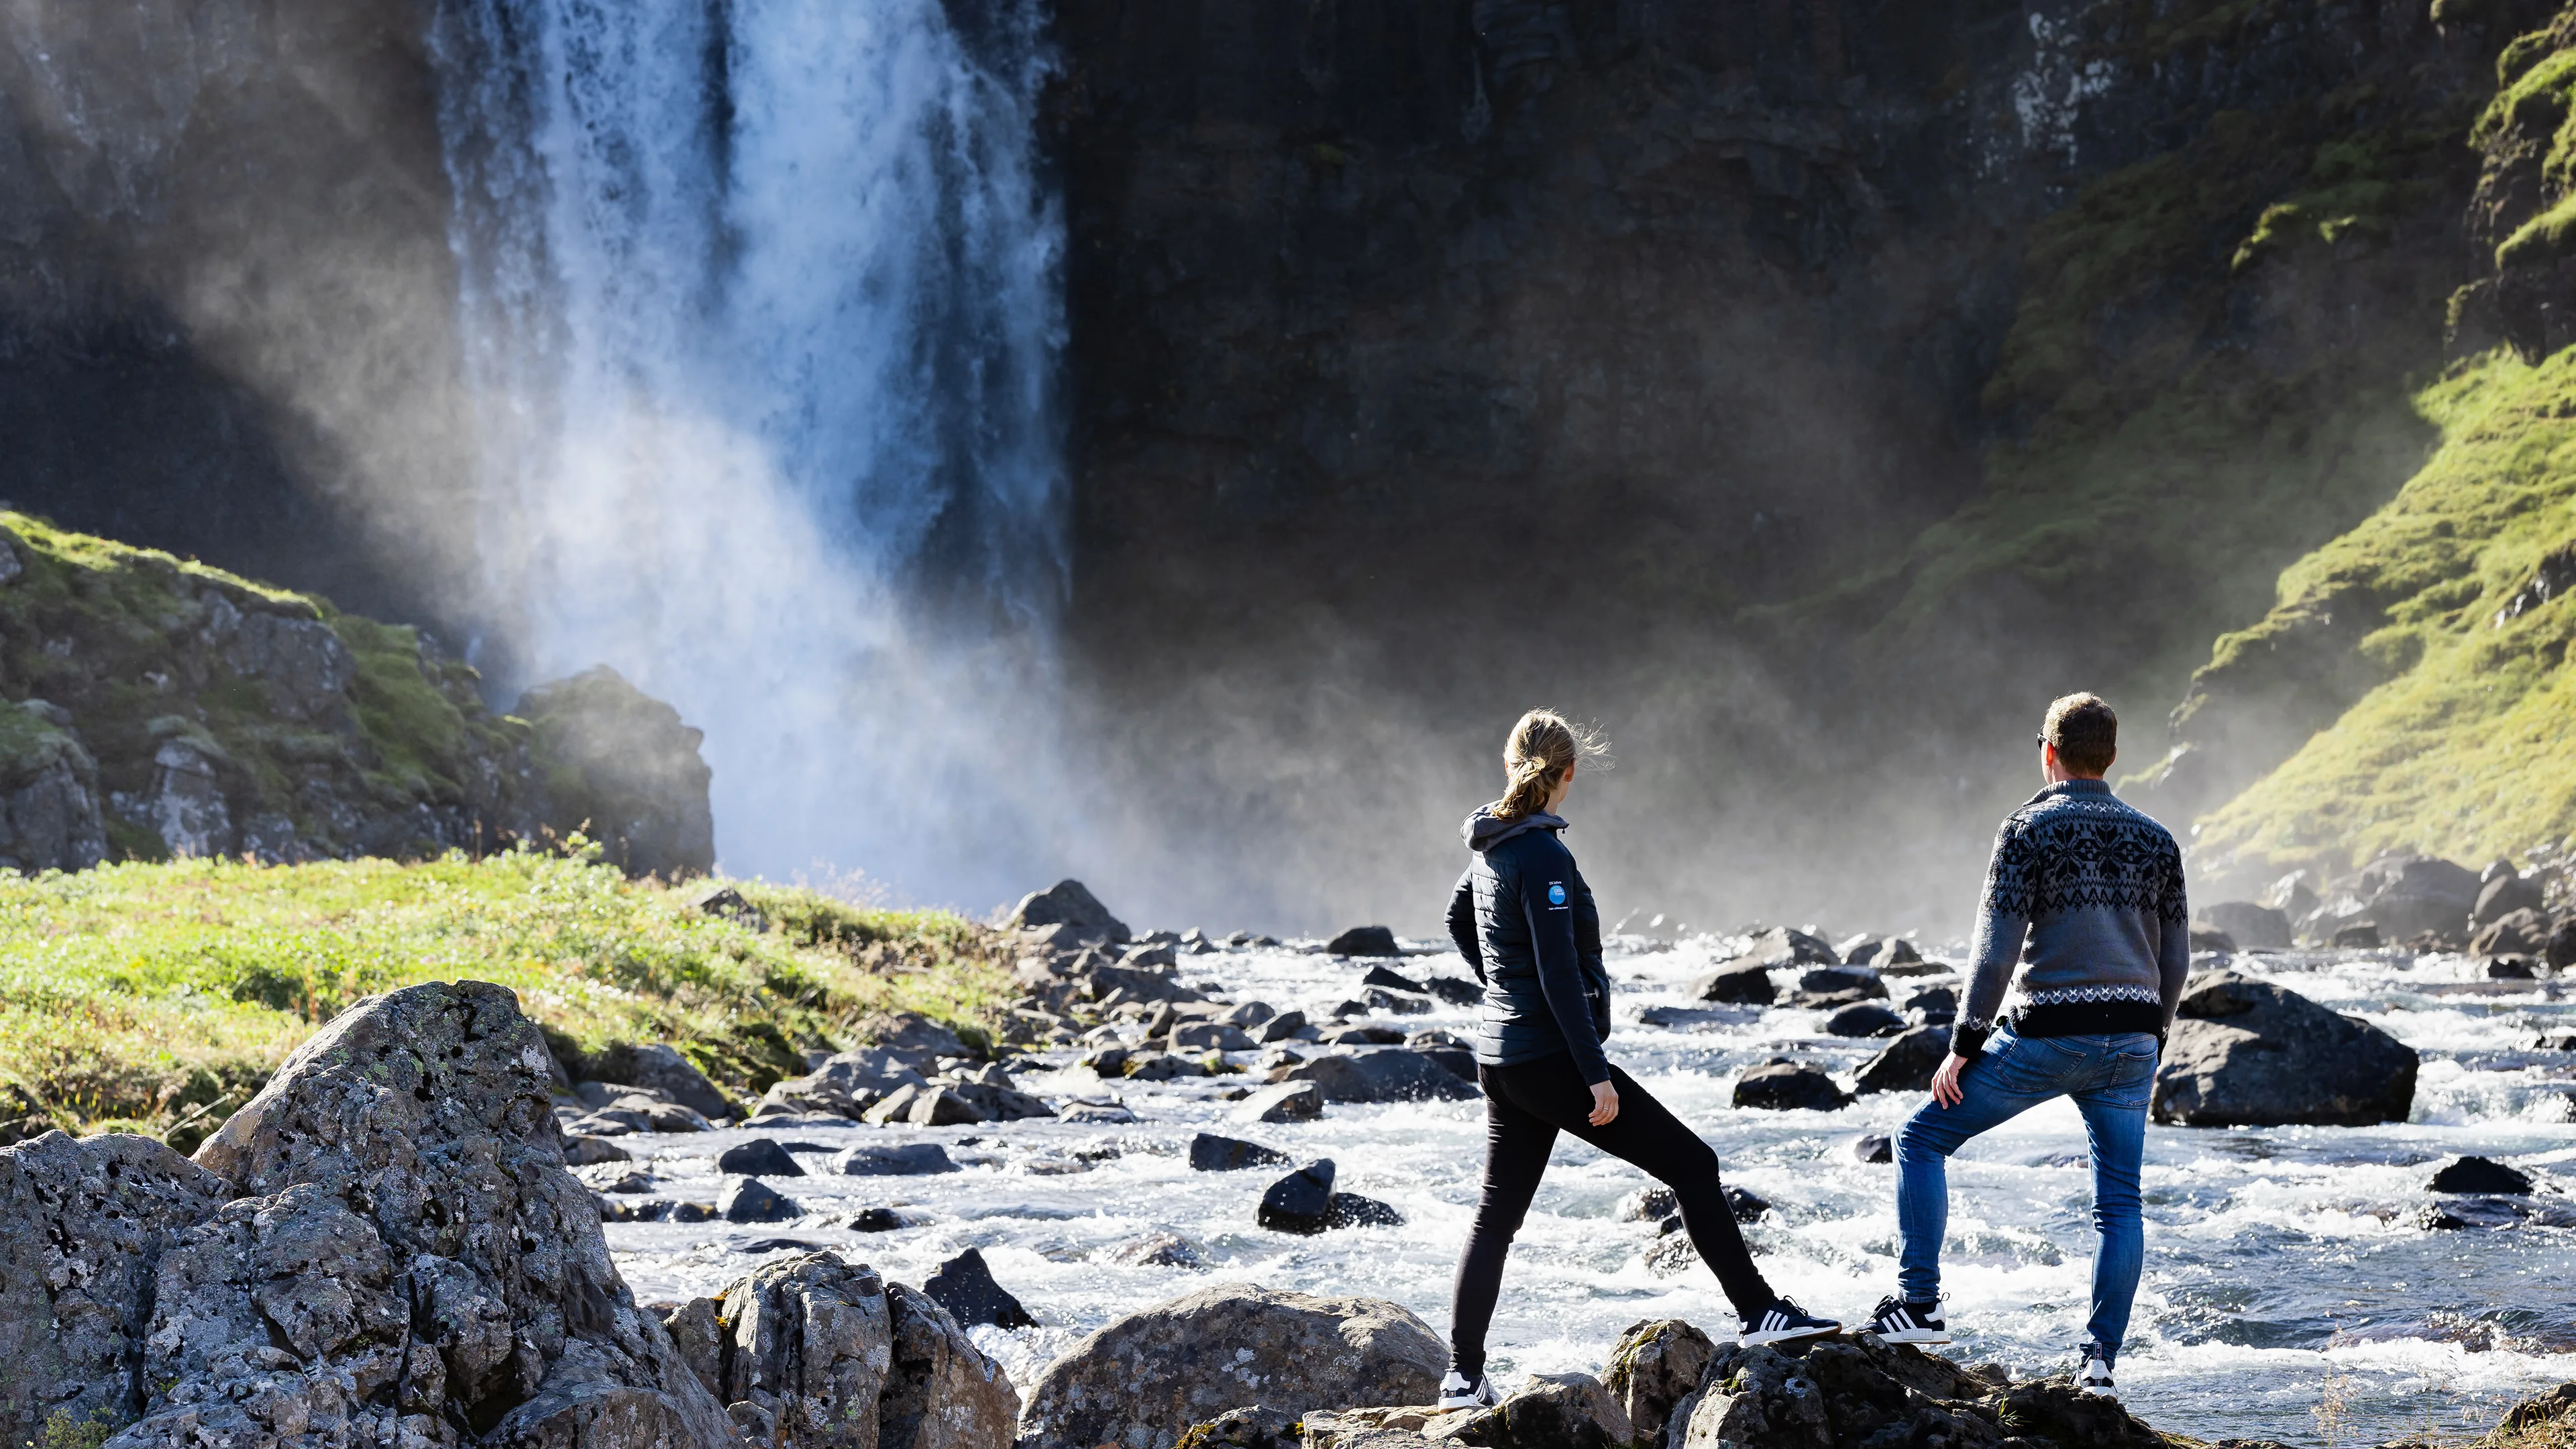 Paar am Wasserfall auf Island, Sprüh-Nebel durch herabstürzendes Wasser, Sonnenstrahlen, kleine Felsen im Wasser